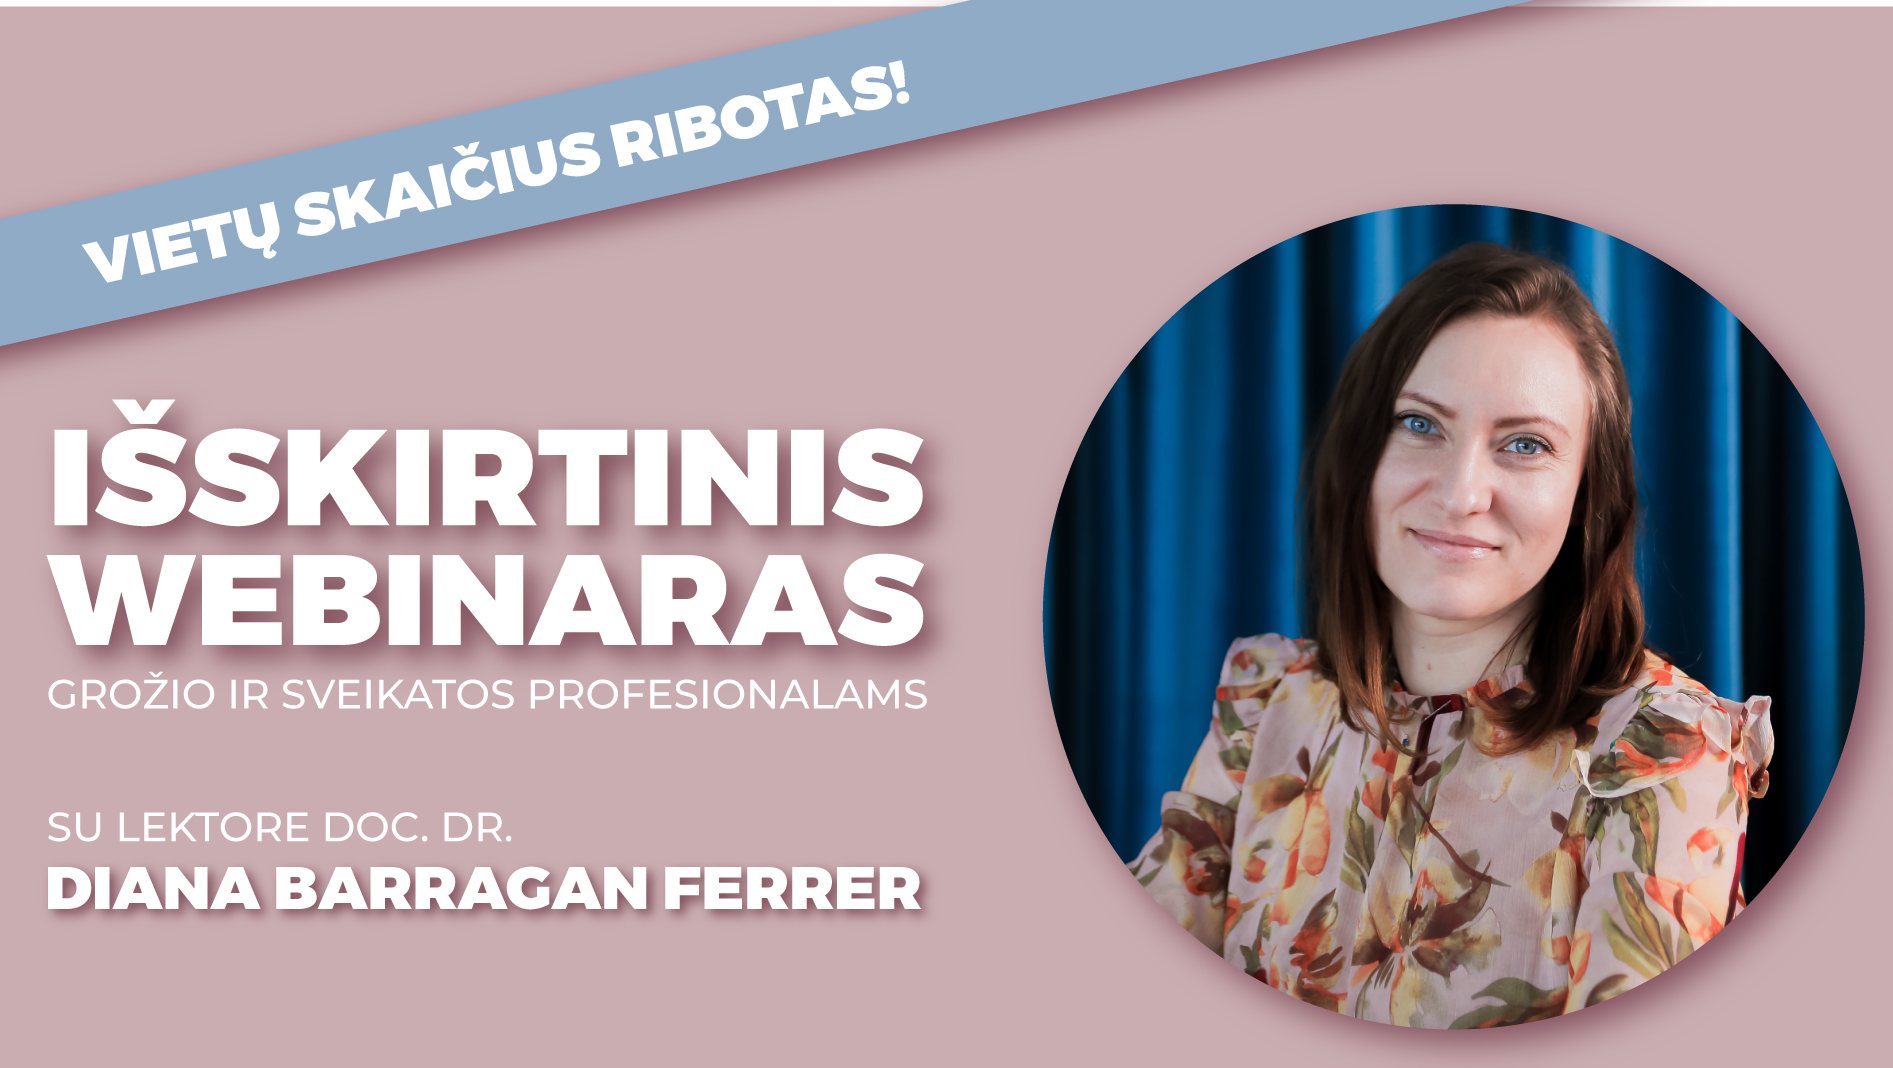 Pagilinkite mokslines žinias webinare su lektore doc. dr. Diana Barragan Ferrer!